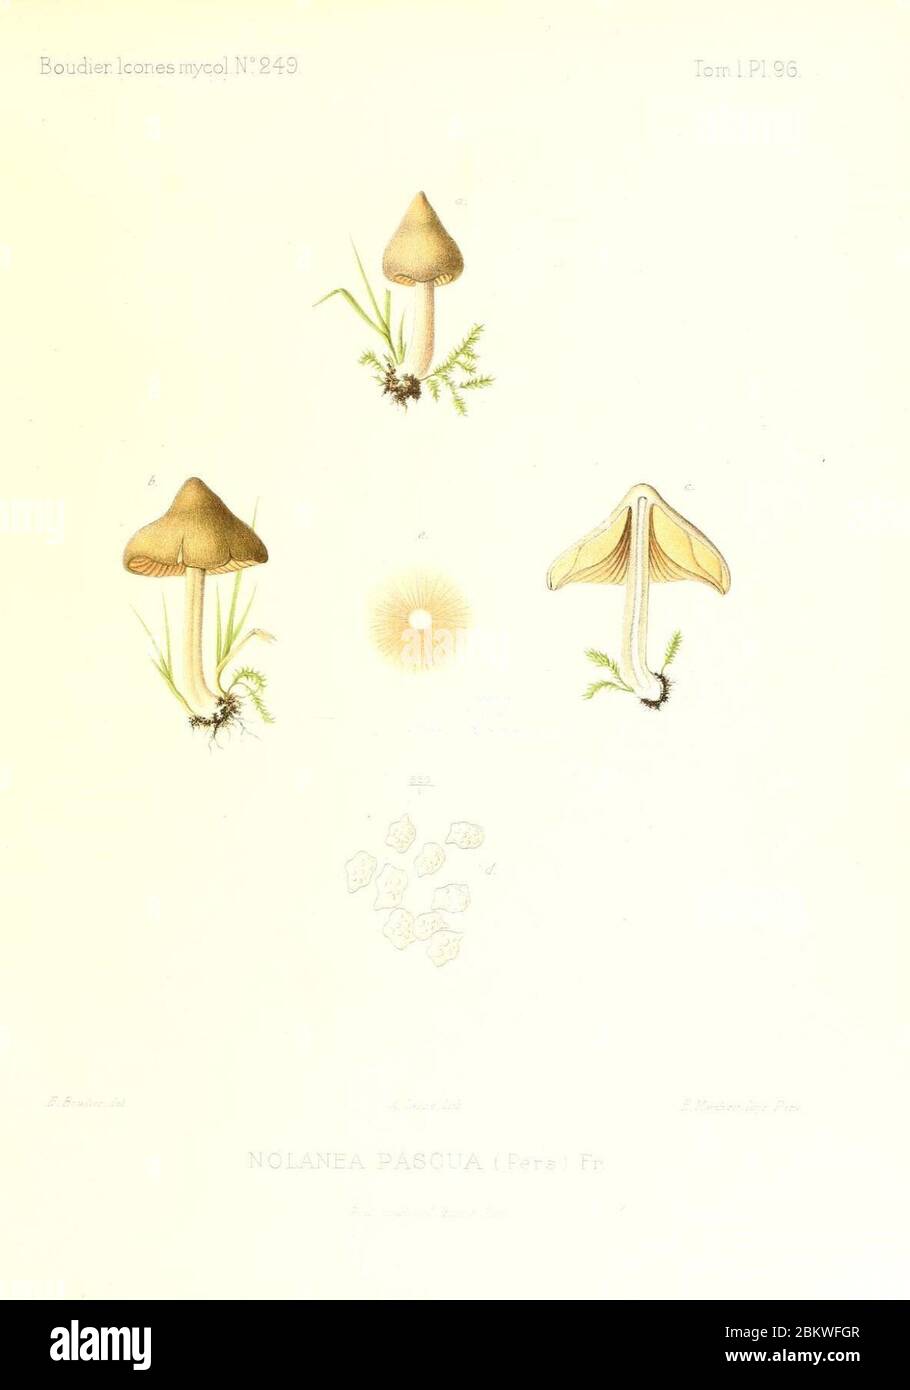 Icones mycologicæ, ou Iconographie des champignons de France principalement Discomycetes (Pl. 96) (9801038266). Stock Photo